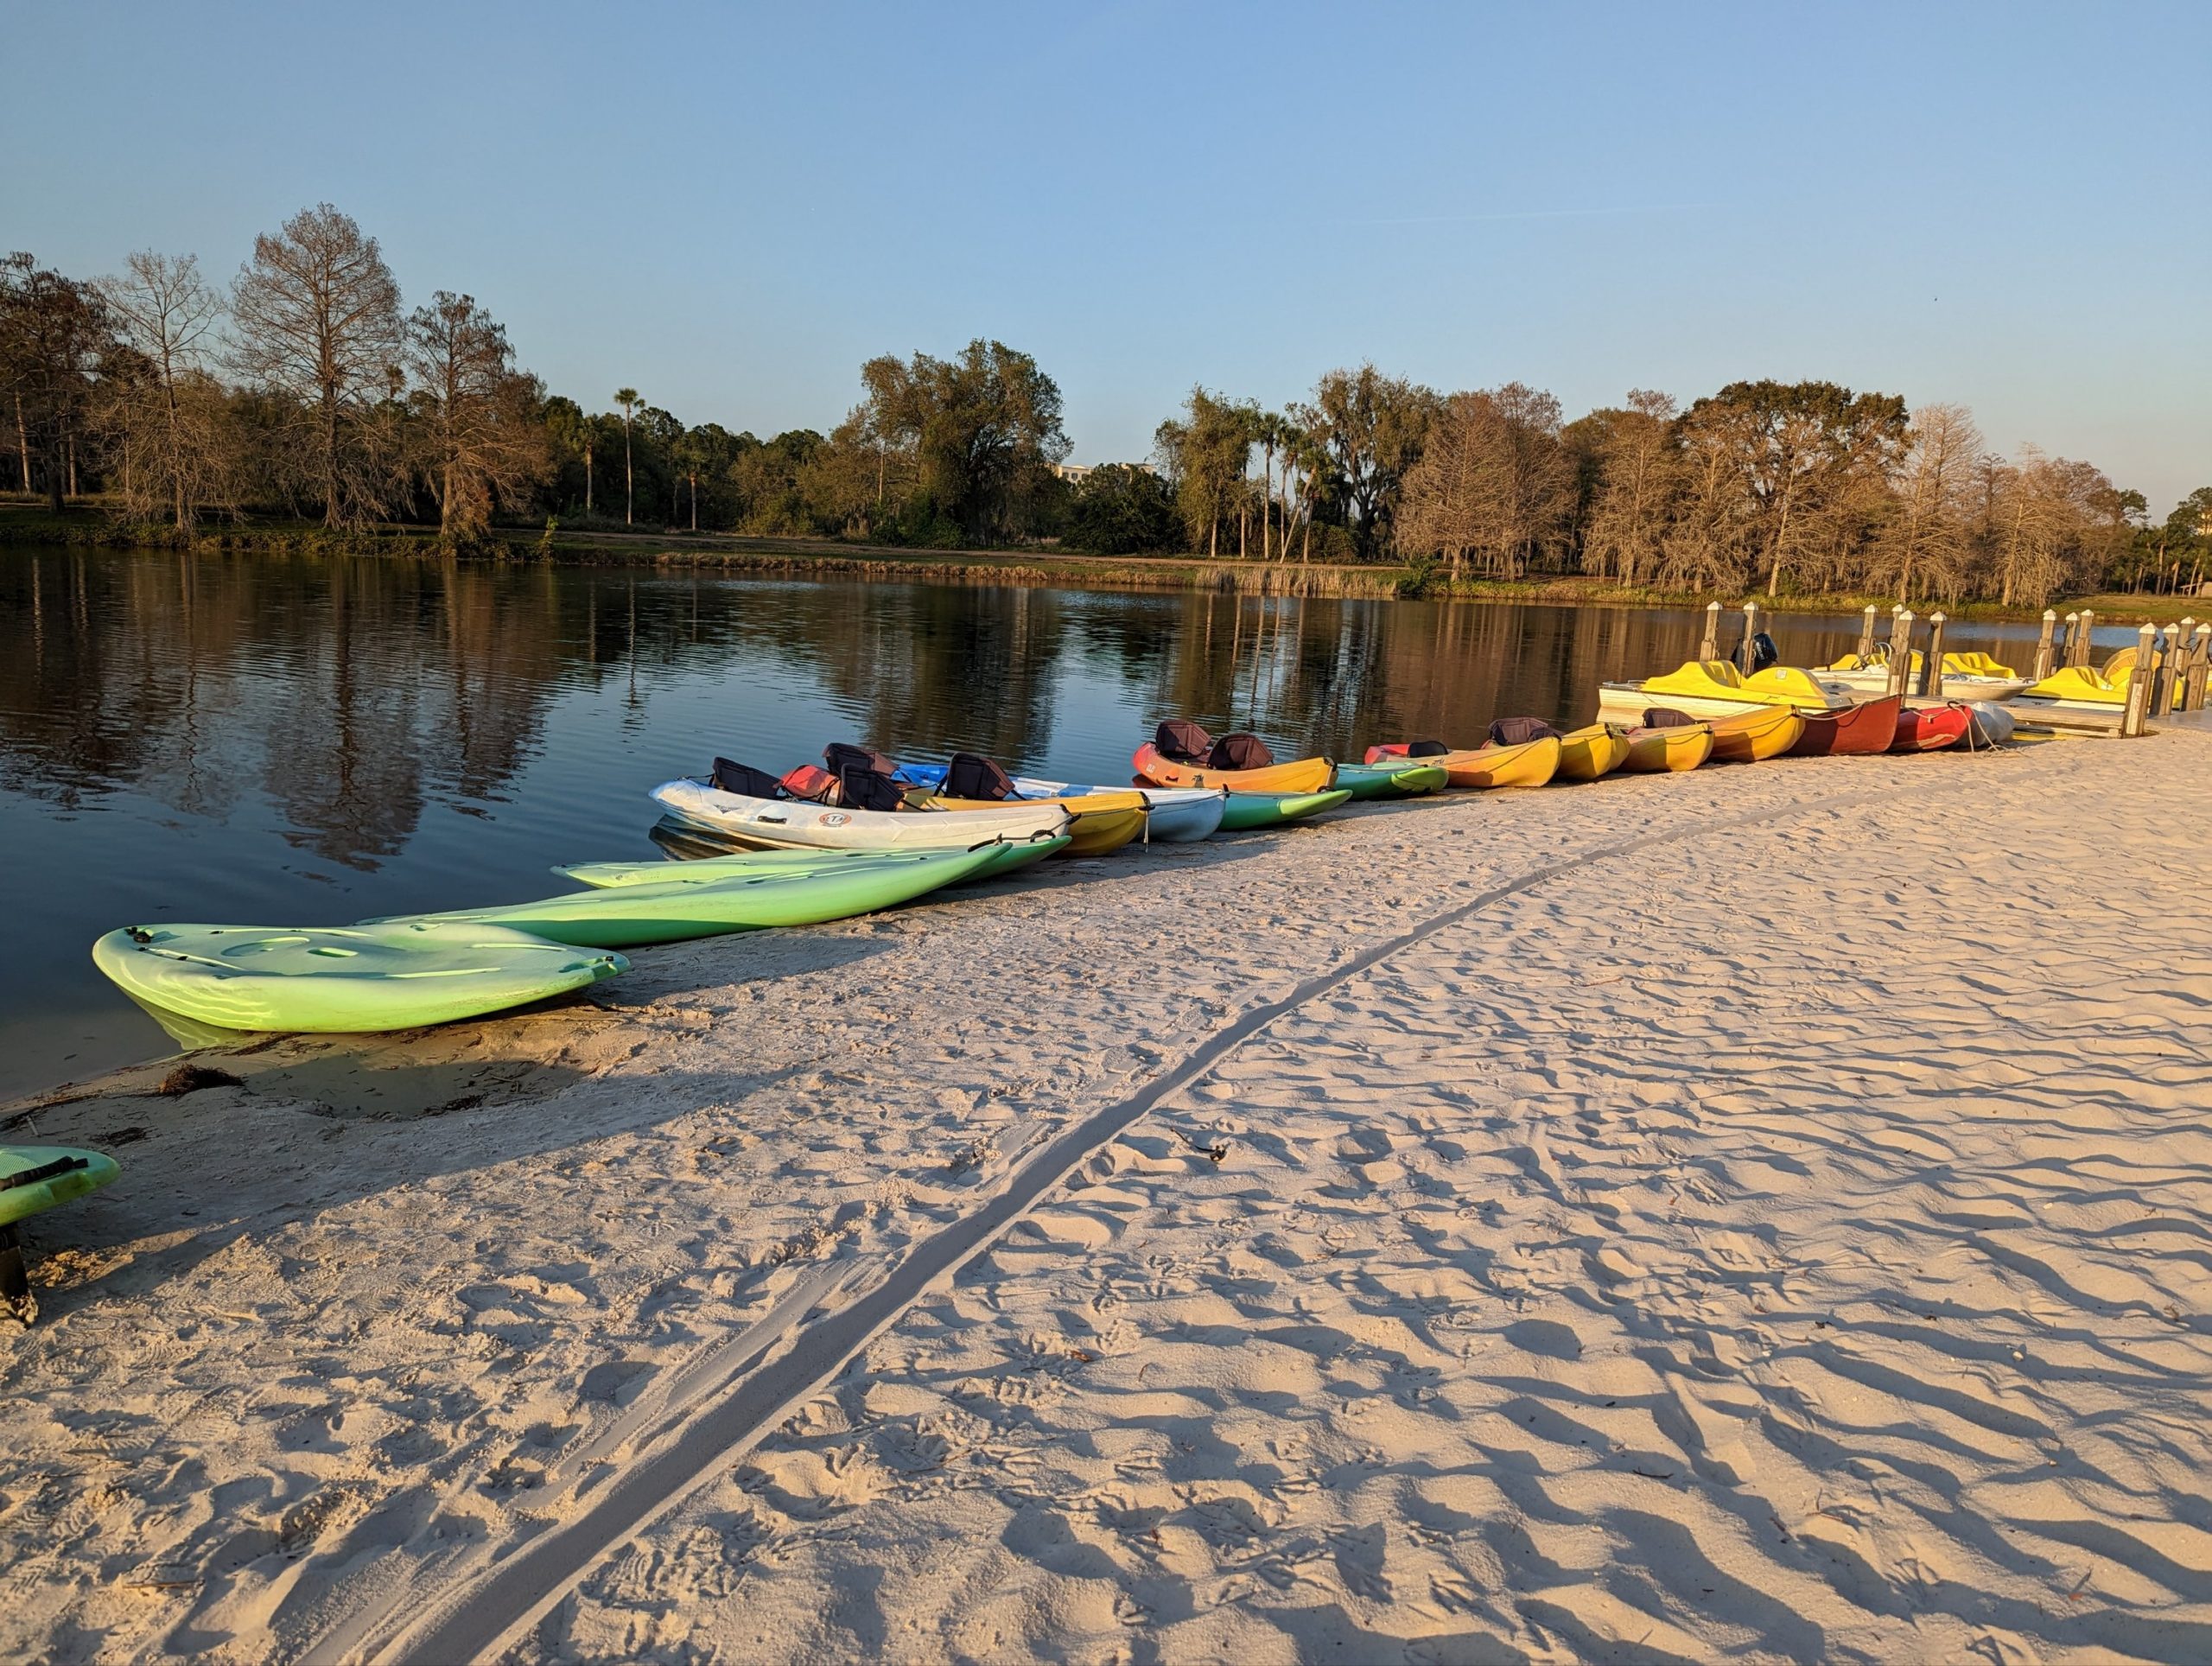 a row of kayaks on a beach